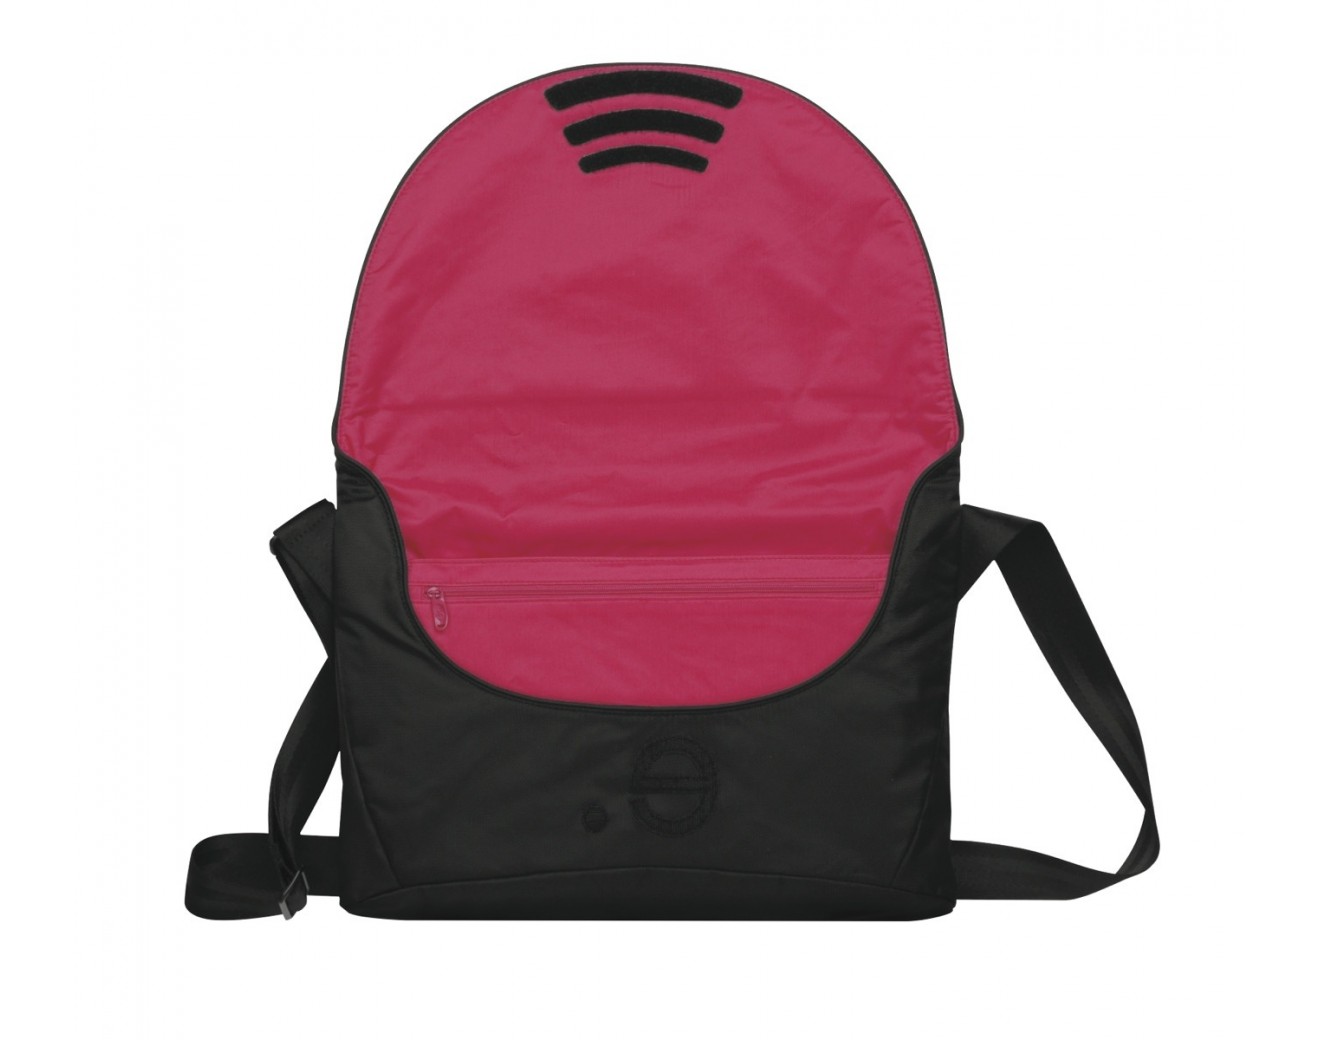 Чанта Be.ez La Garde Black Addict за MacBook 13inch - Black-Pink